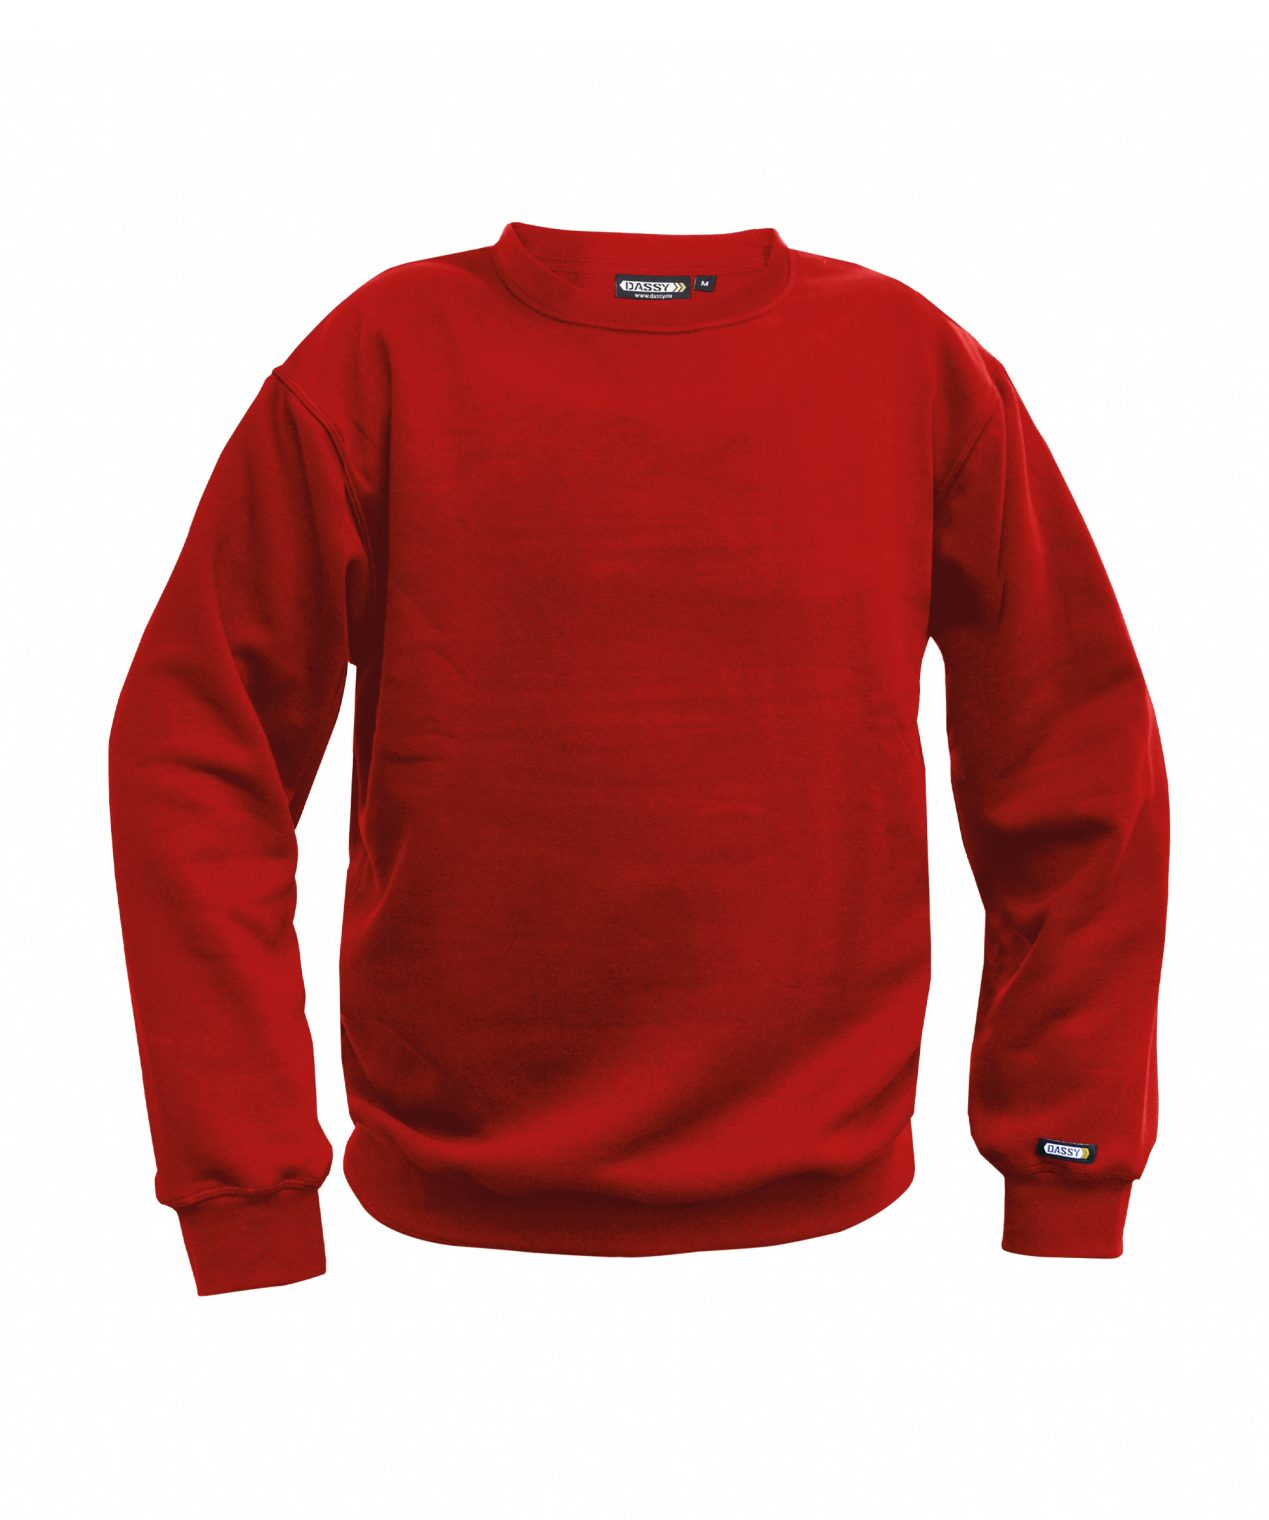 lionel sweatshirt red front